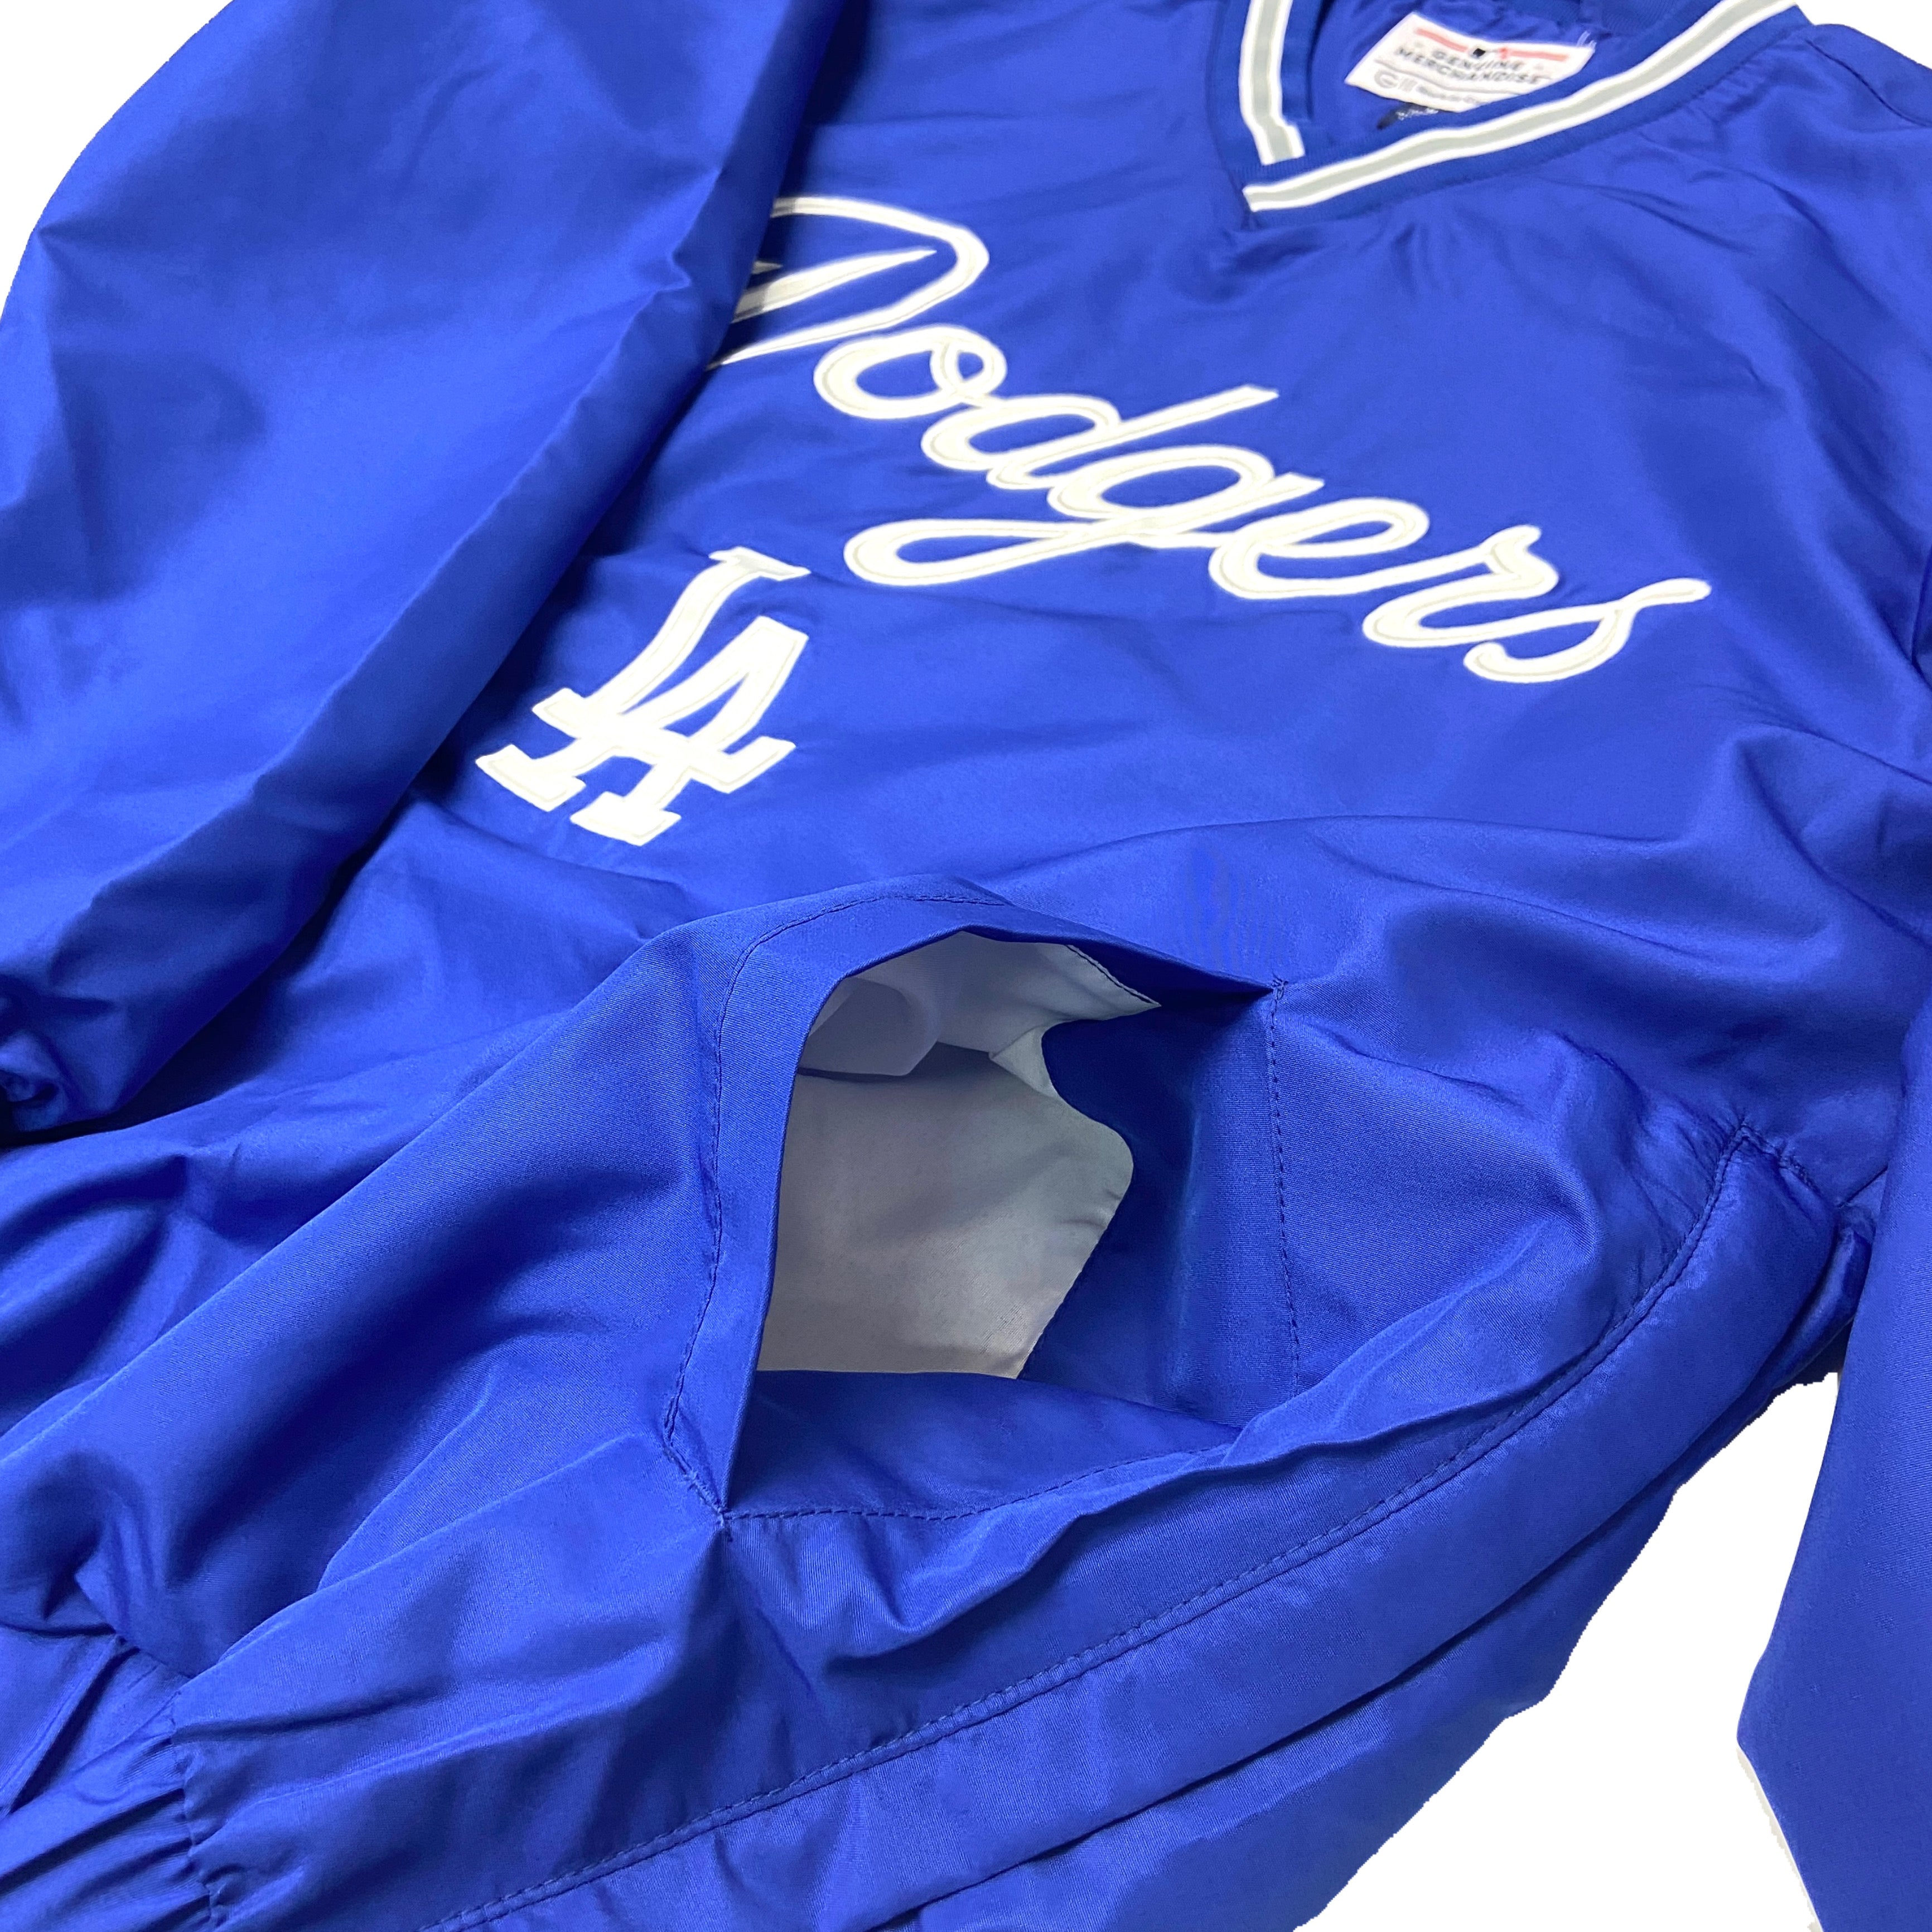 Starter Los Angeles Dodgers MLB Jerseys for sale